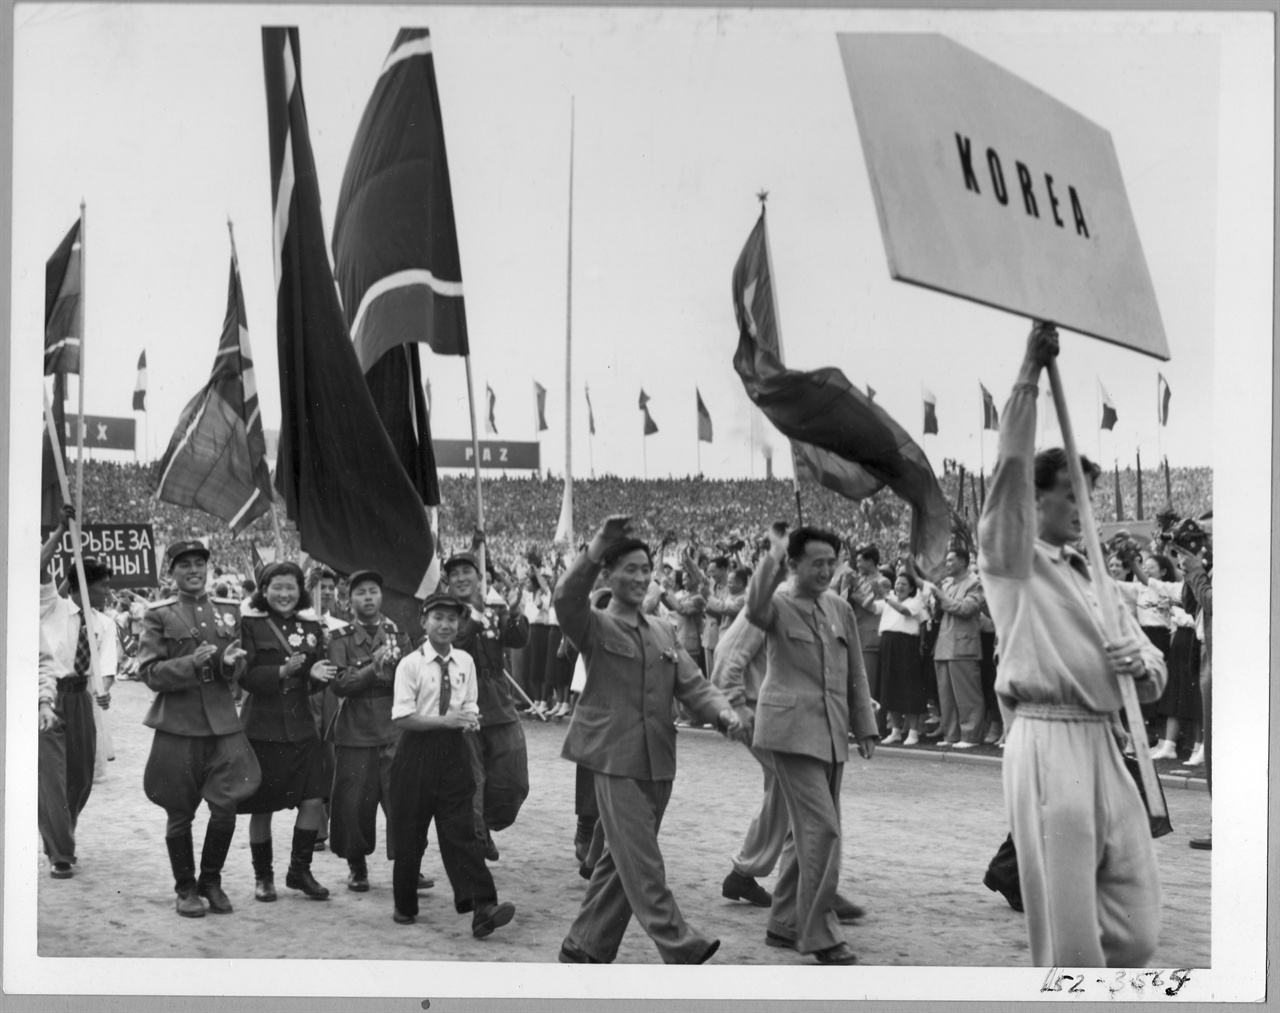  1951. 8. 북한대표단이 동 베를린 울브라이트에서 열린 세계평화궐기대회에 참석하여 입장하고 있다. 